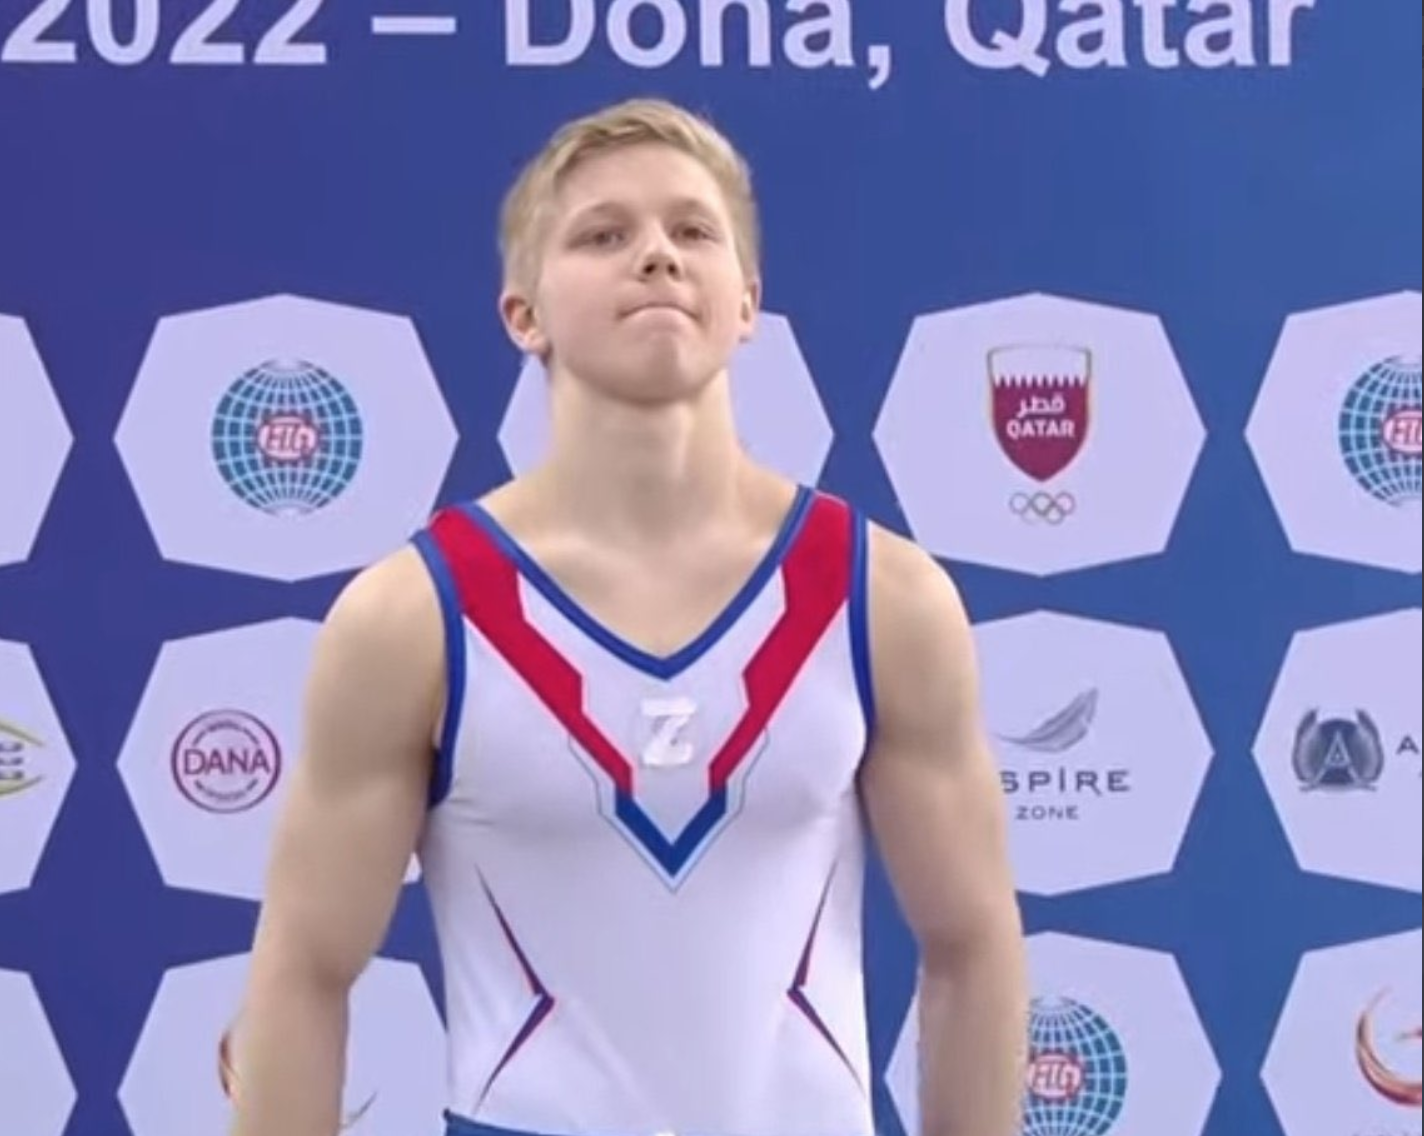 Ivan Kuliak bei der Siegerung in Doha, auf der Brust das „Z" zeigend